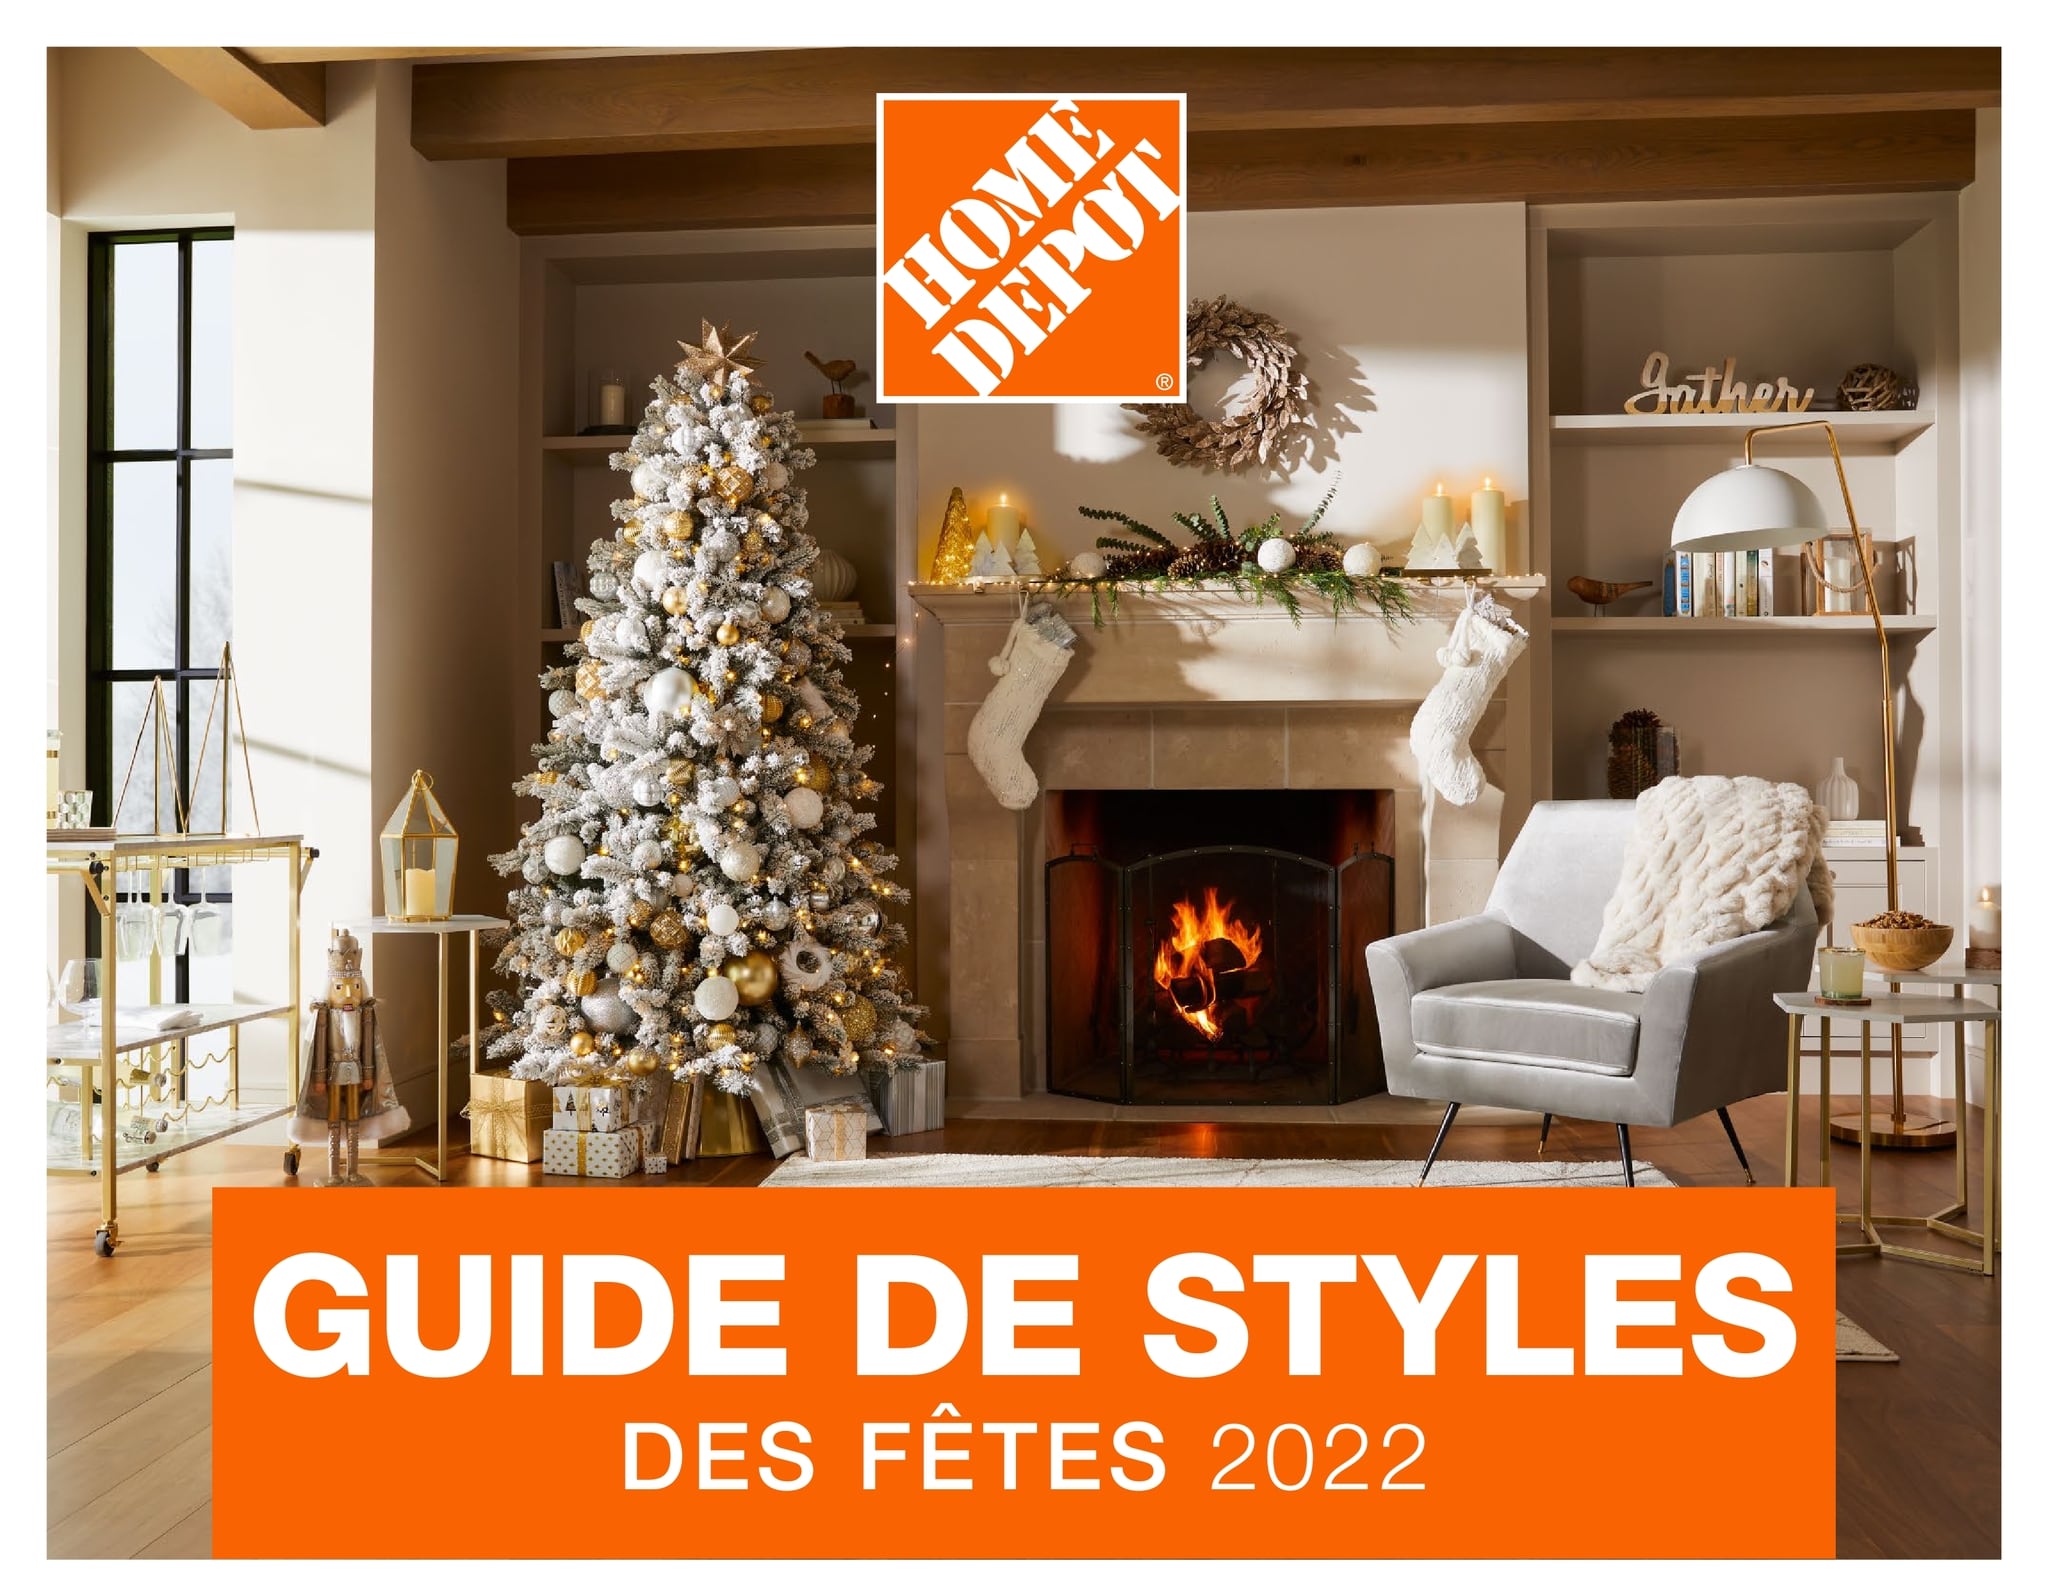 Circulaire Home Depot - Guide de Styles des Fêtes 2022